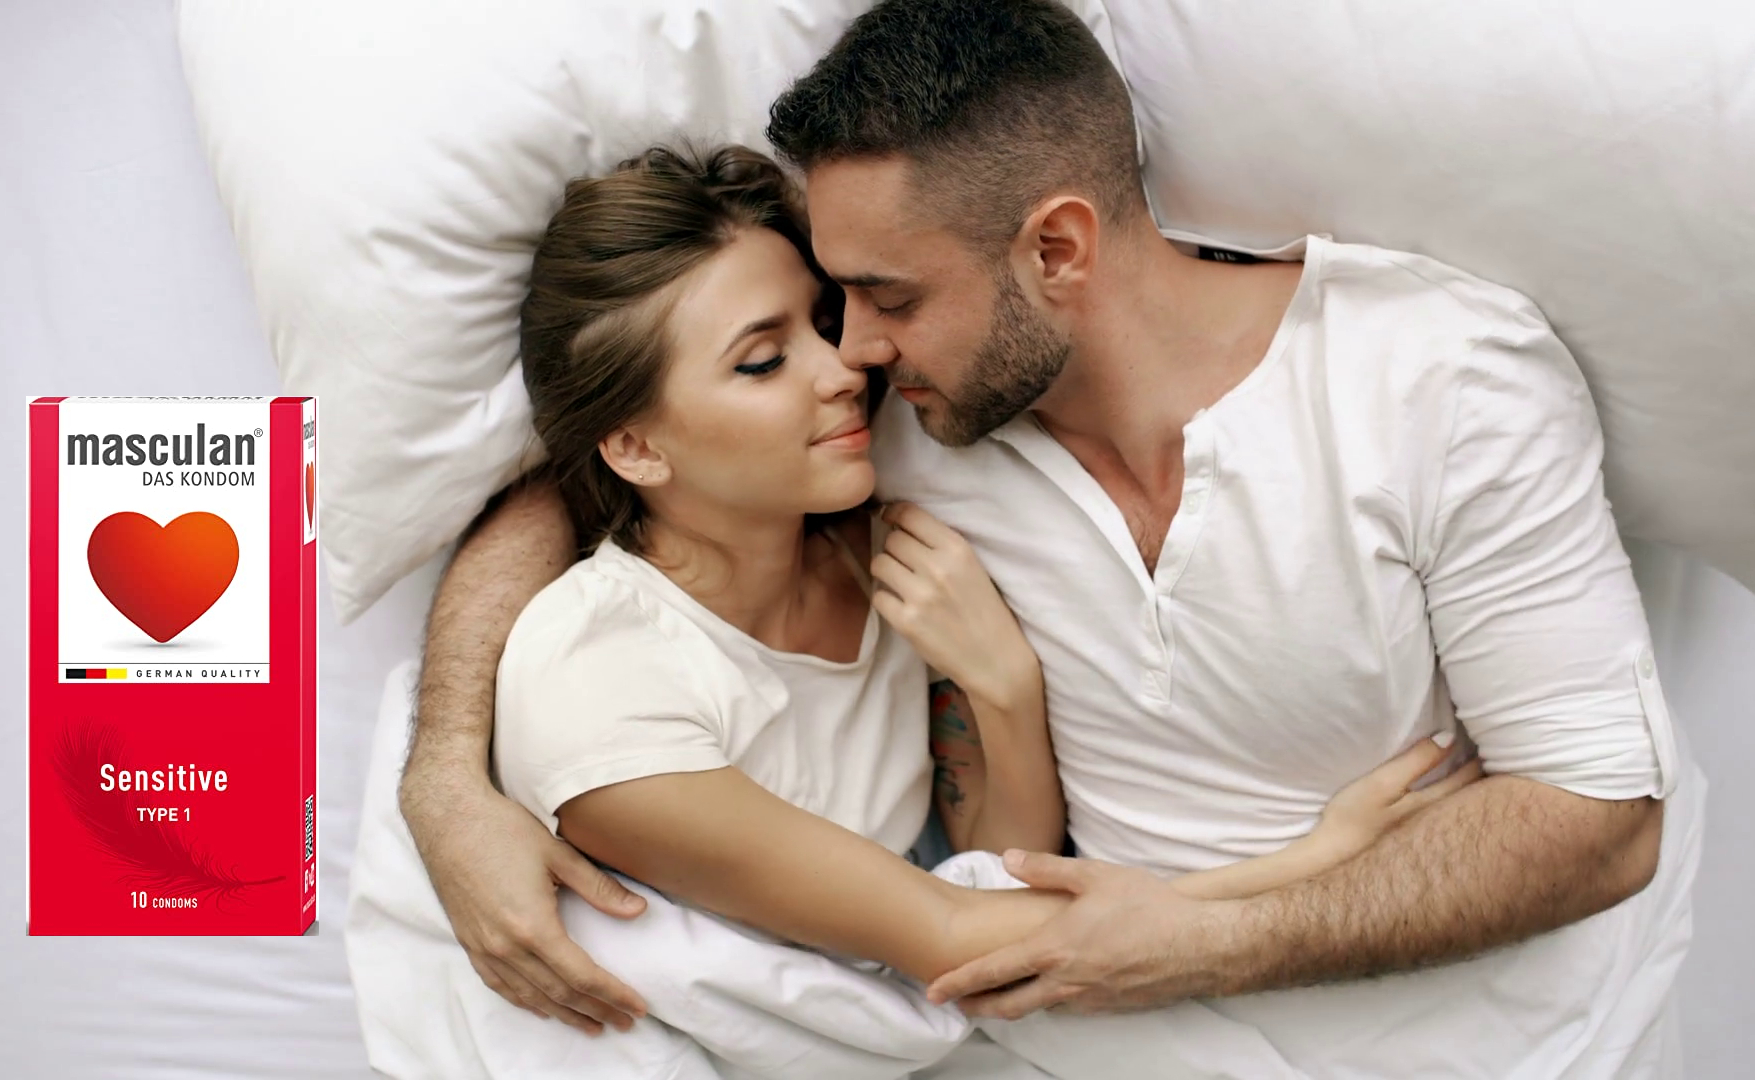 мужчина и женщина лежат в объятиях на кровати